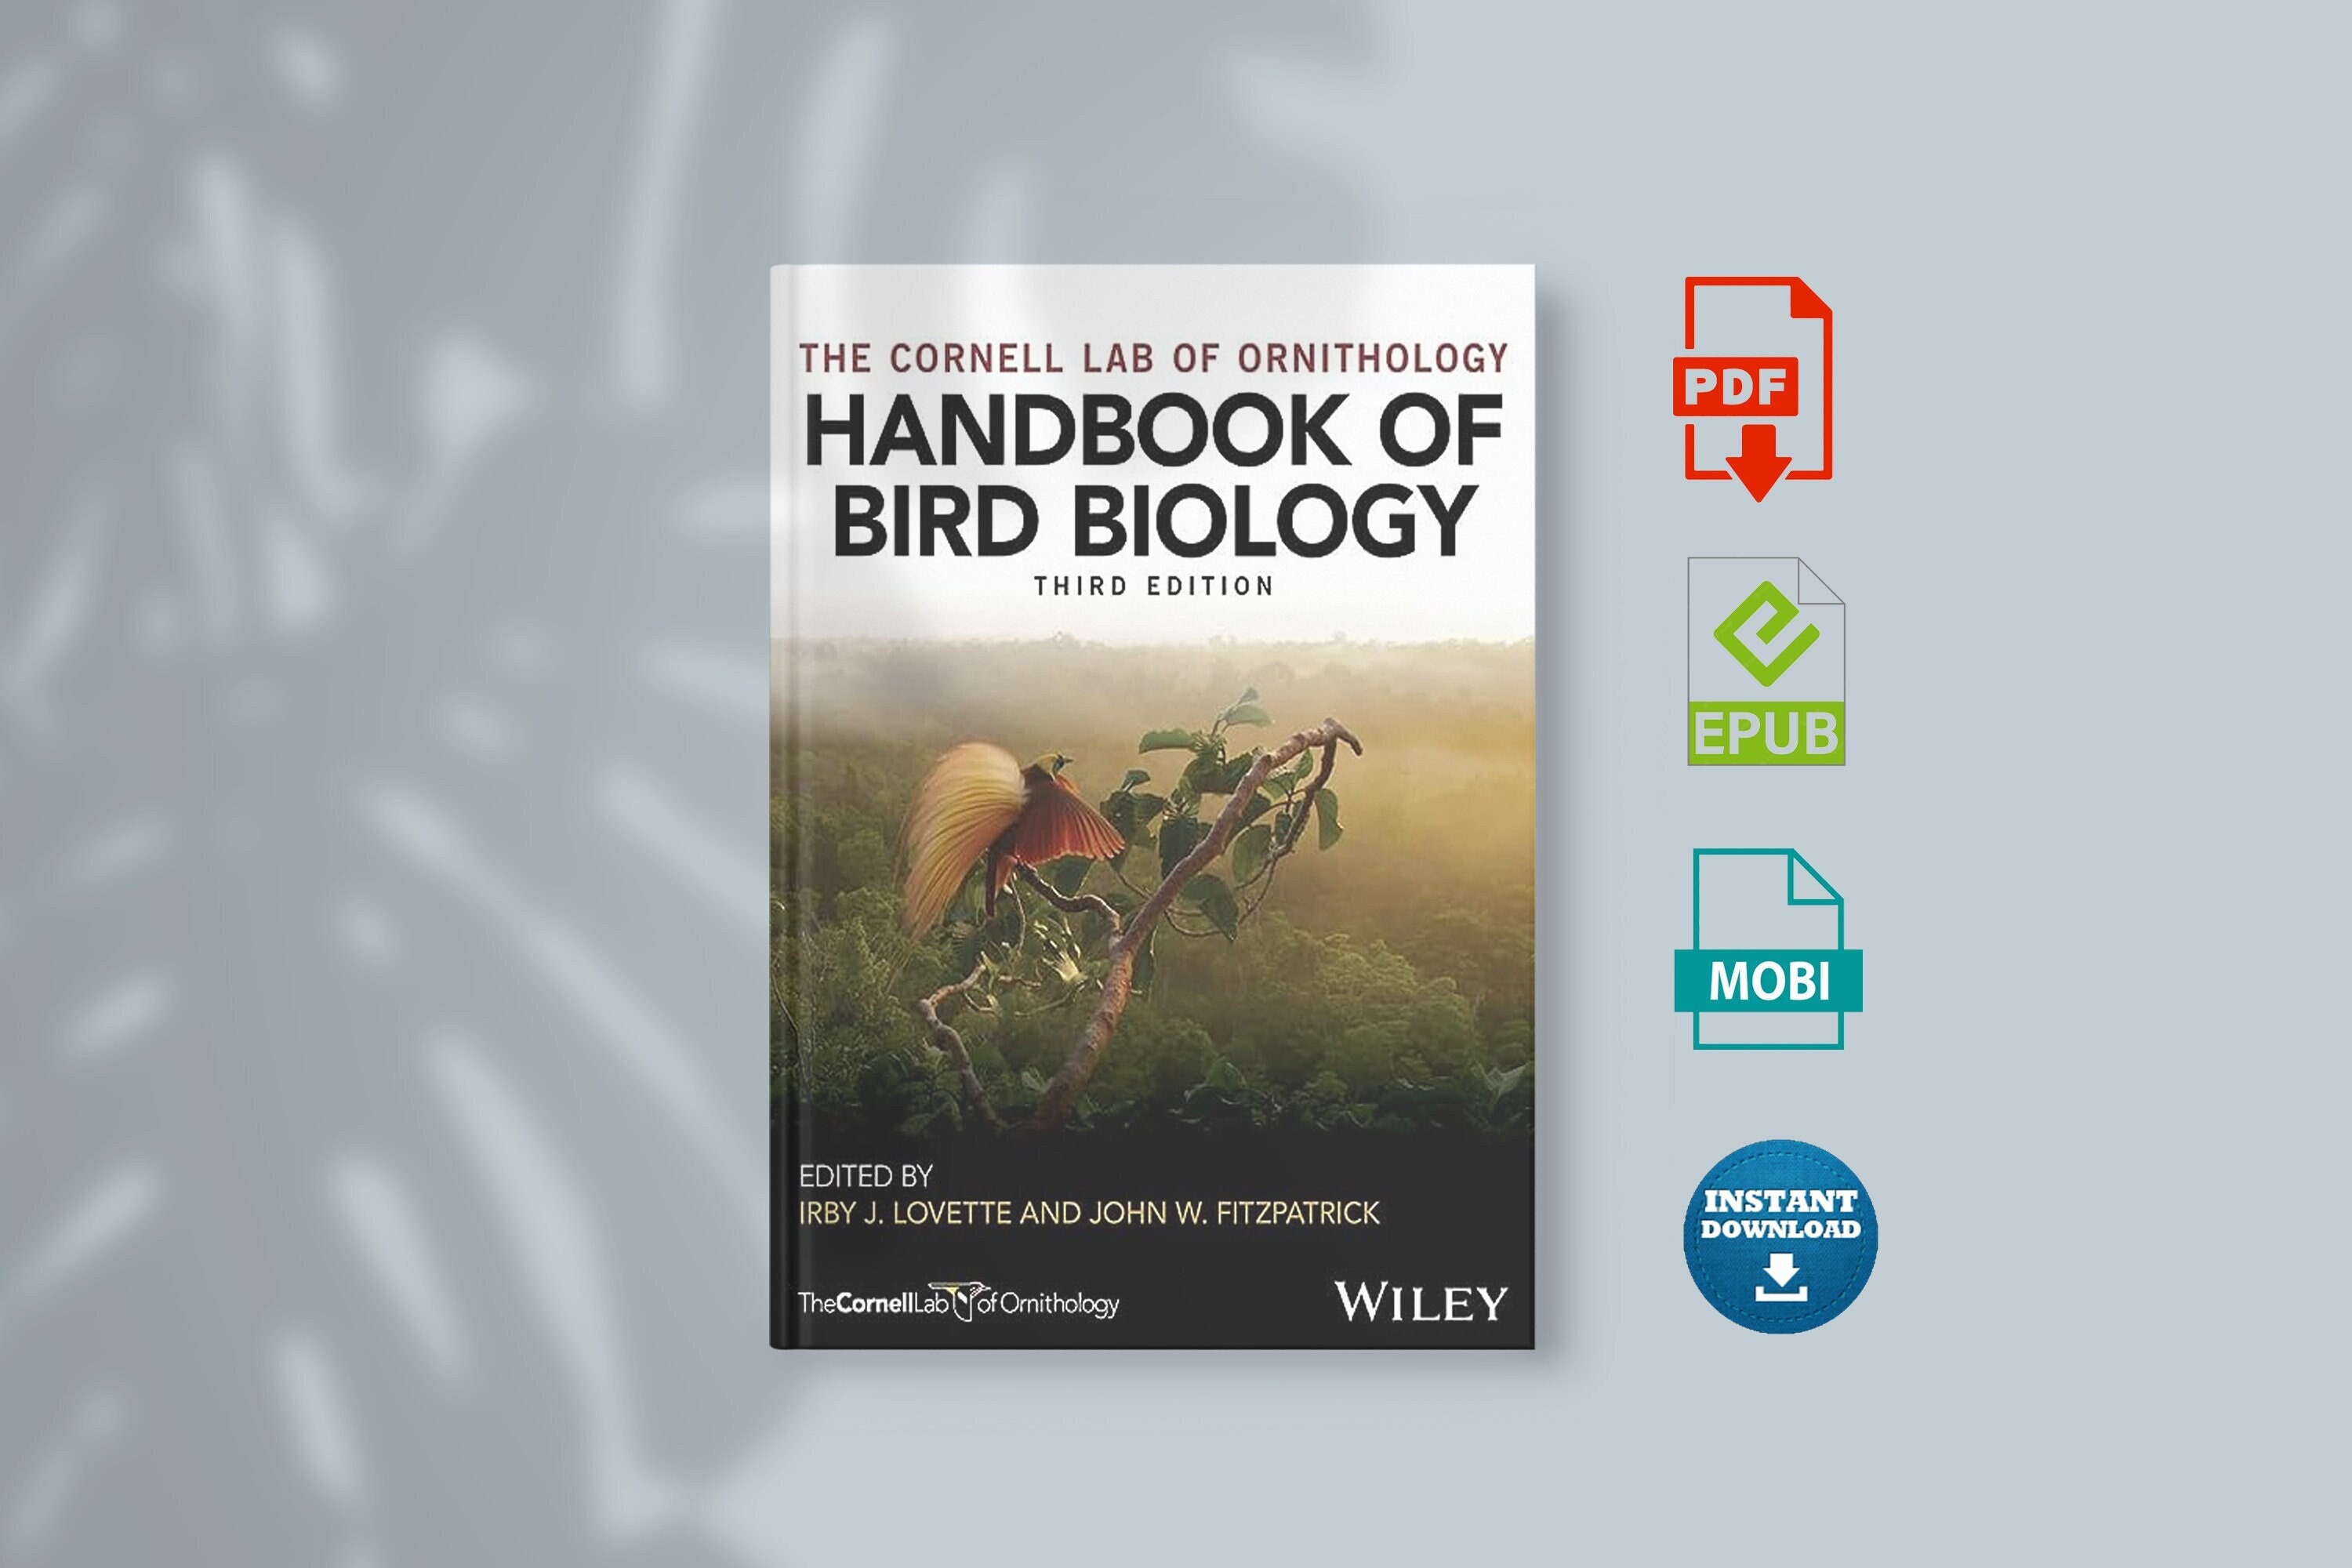 Etsy　India　In　Online　Books　Ornithology　Buy　India